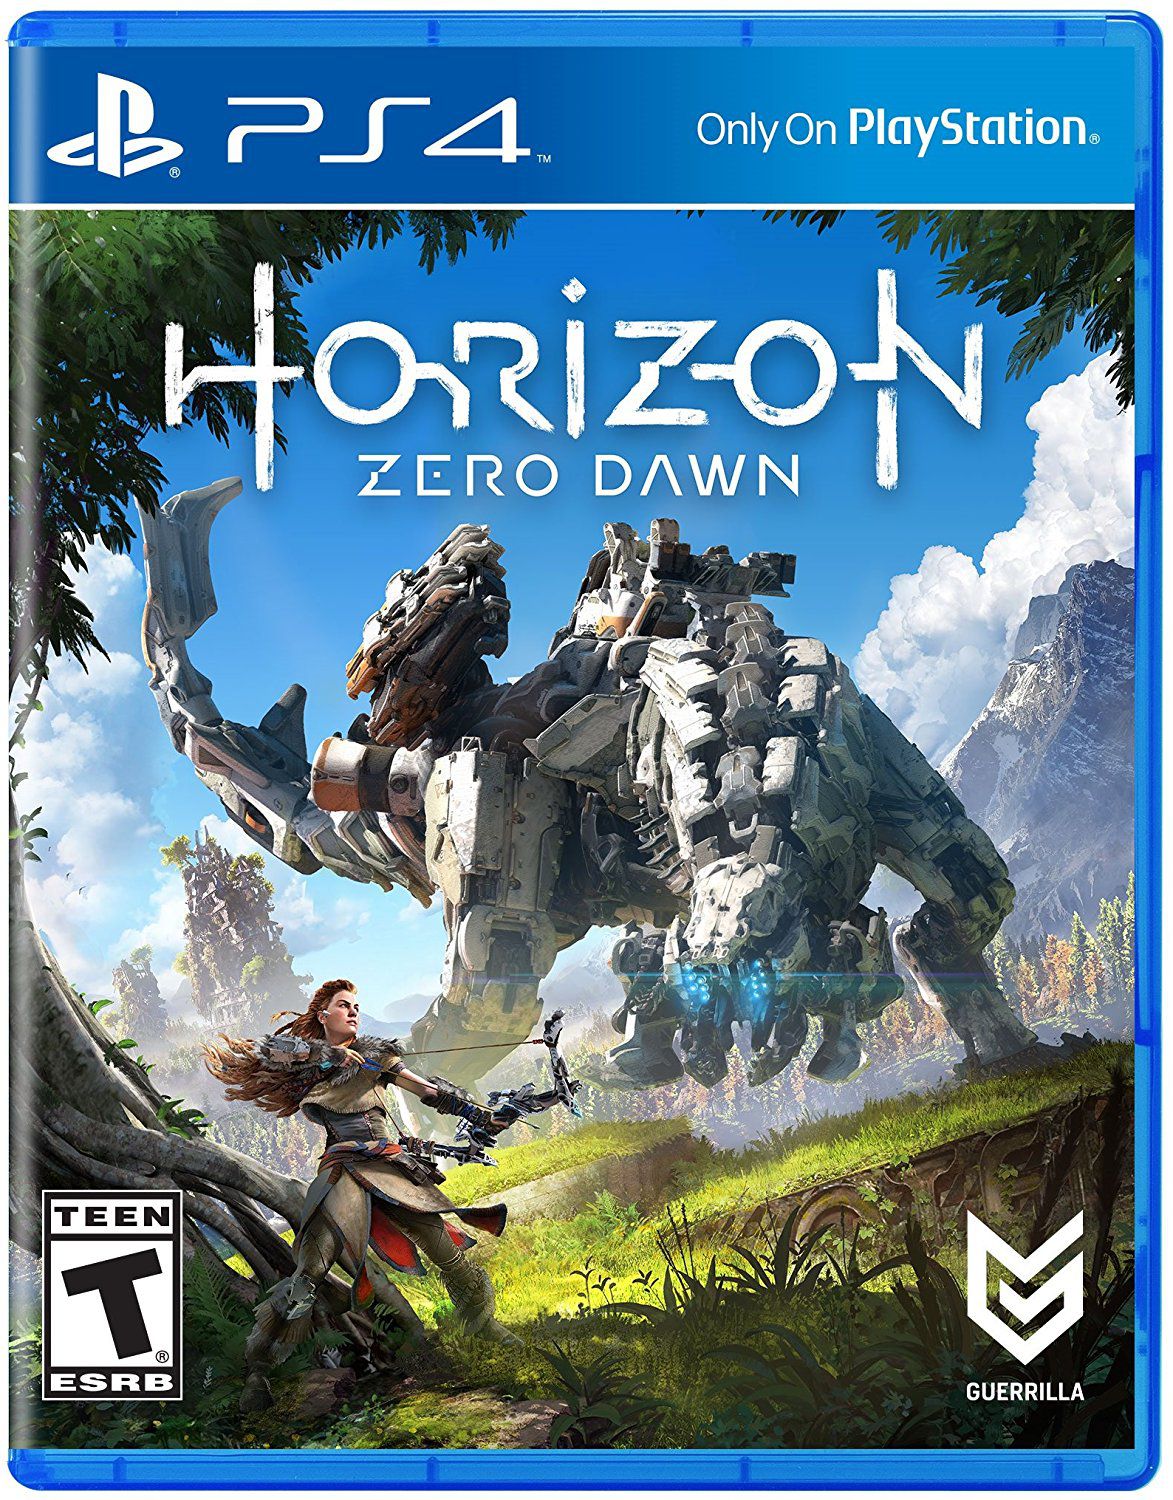 Horizon Zero Dawn™ Complete Edition for PC, Guerrilla